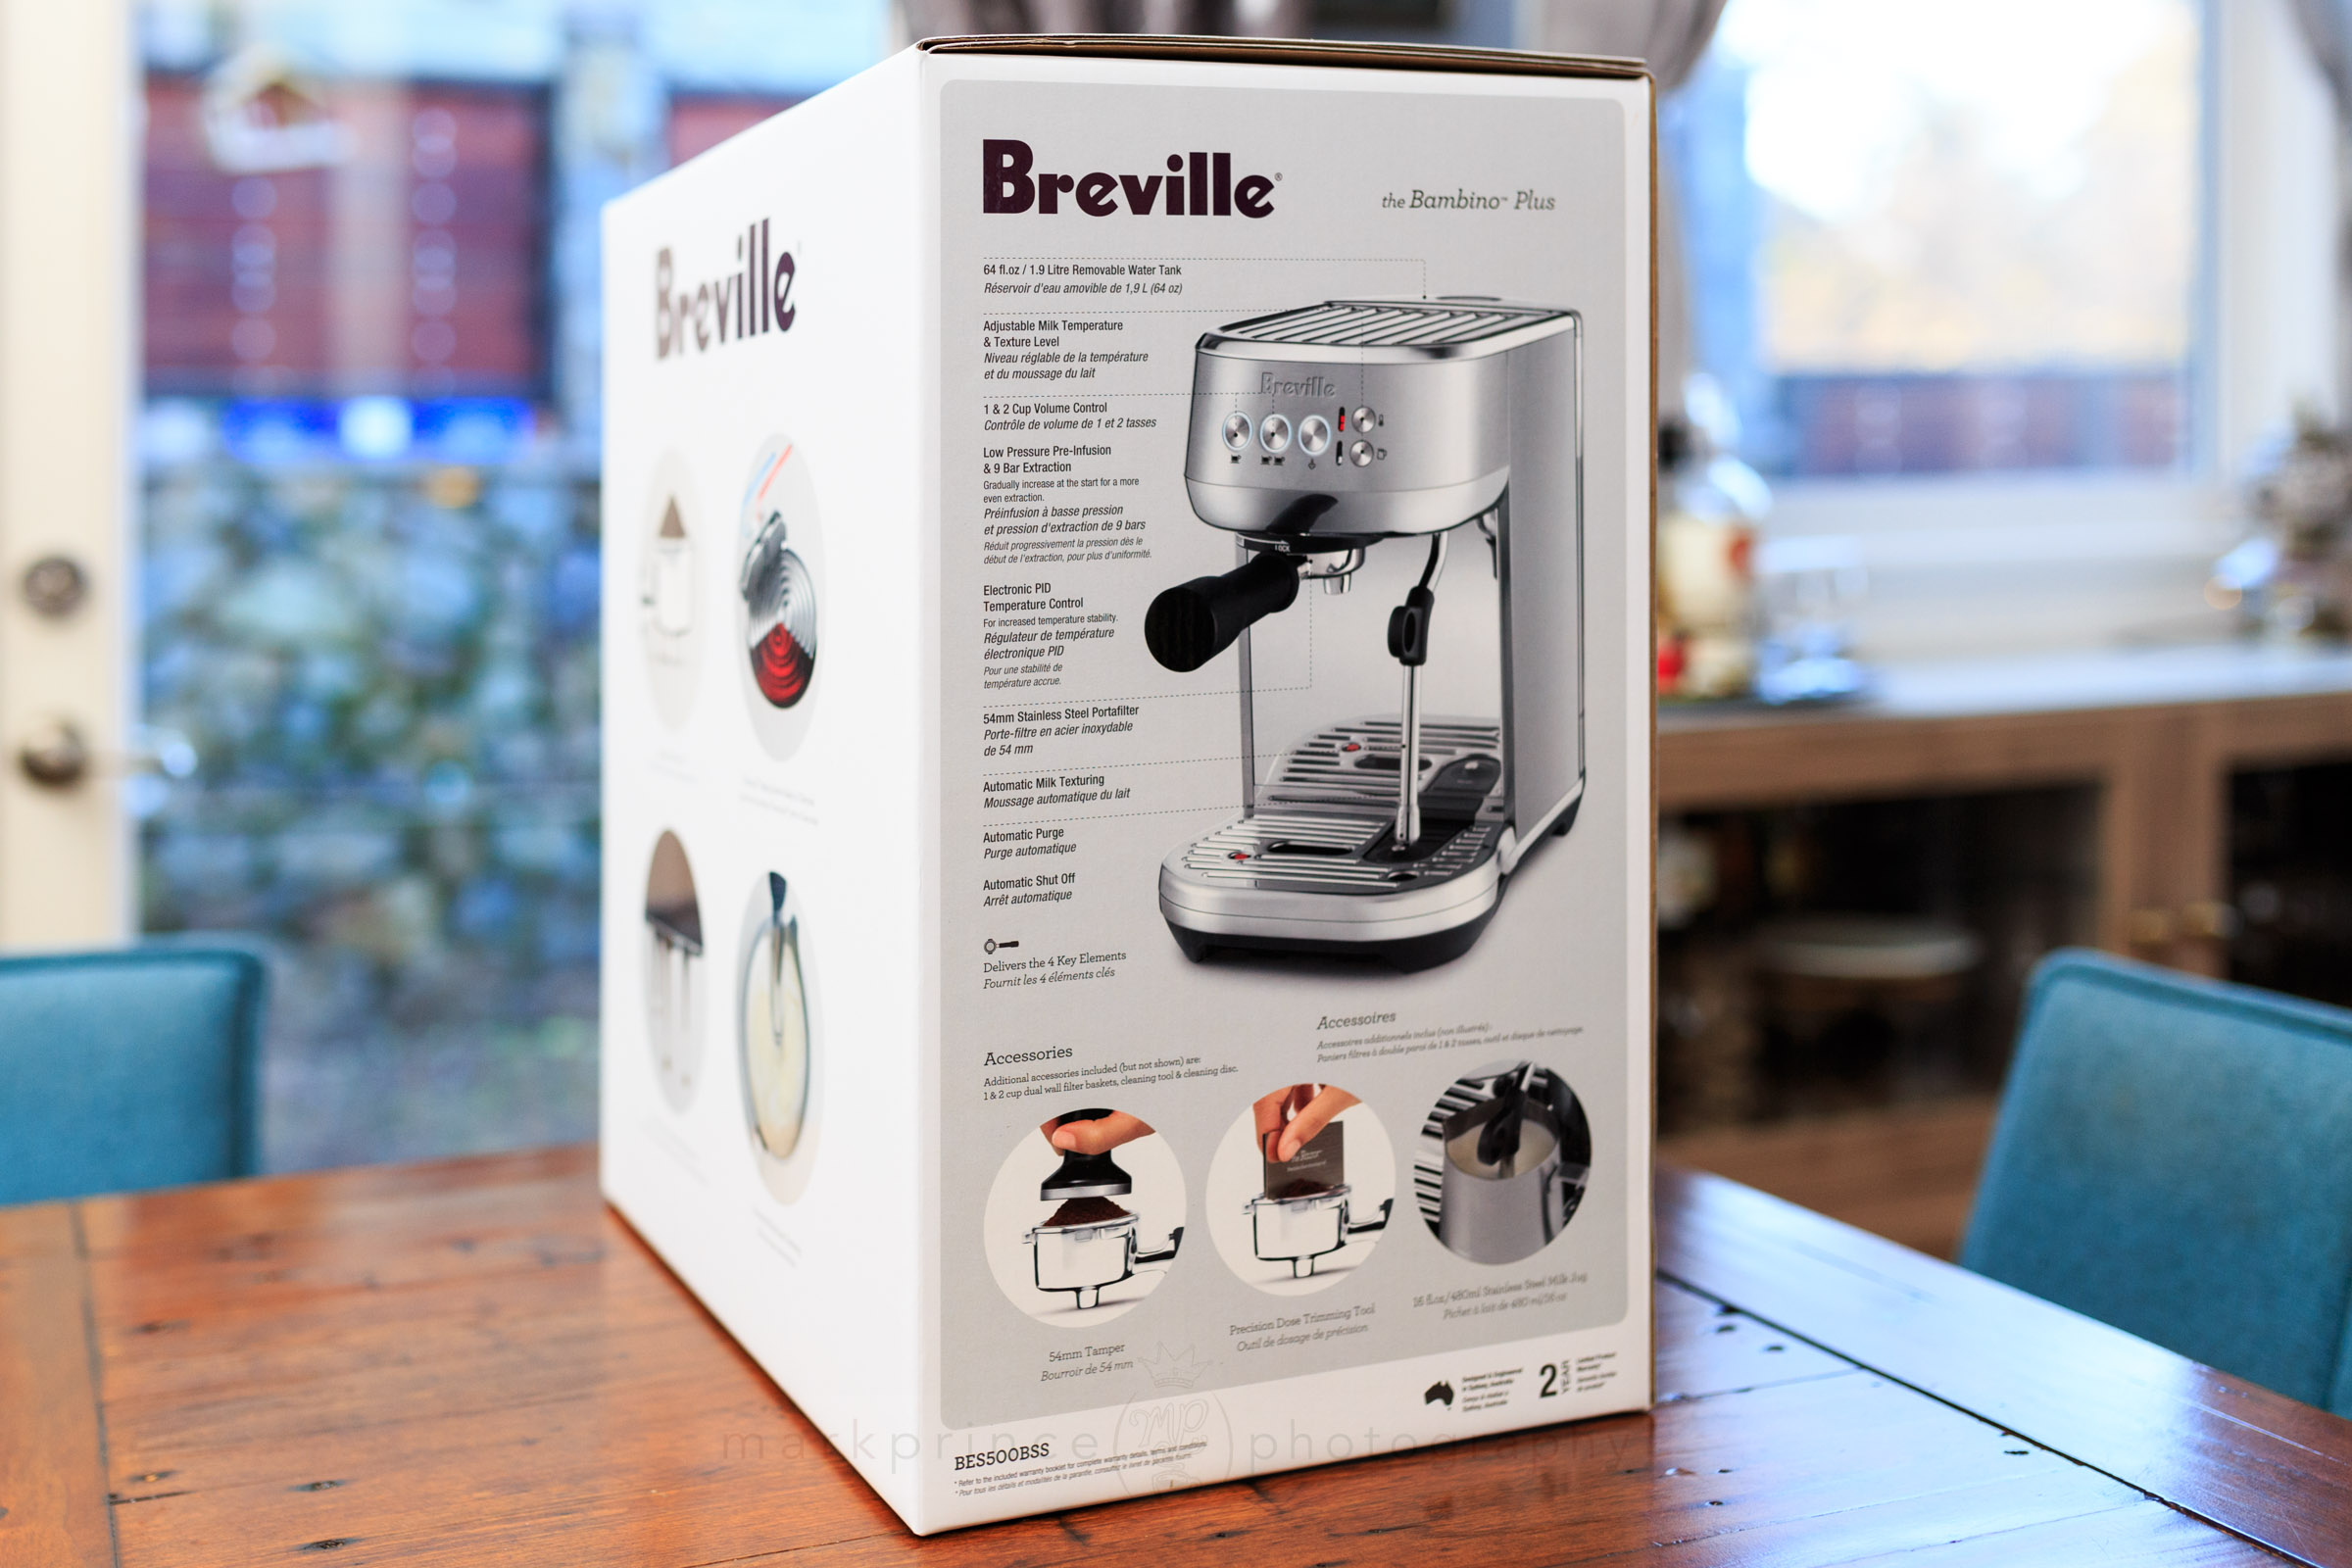 Breville Bambino Plus Espresso Machine Review